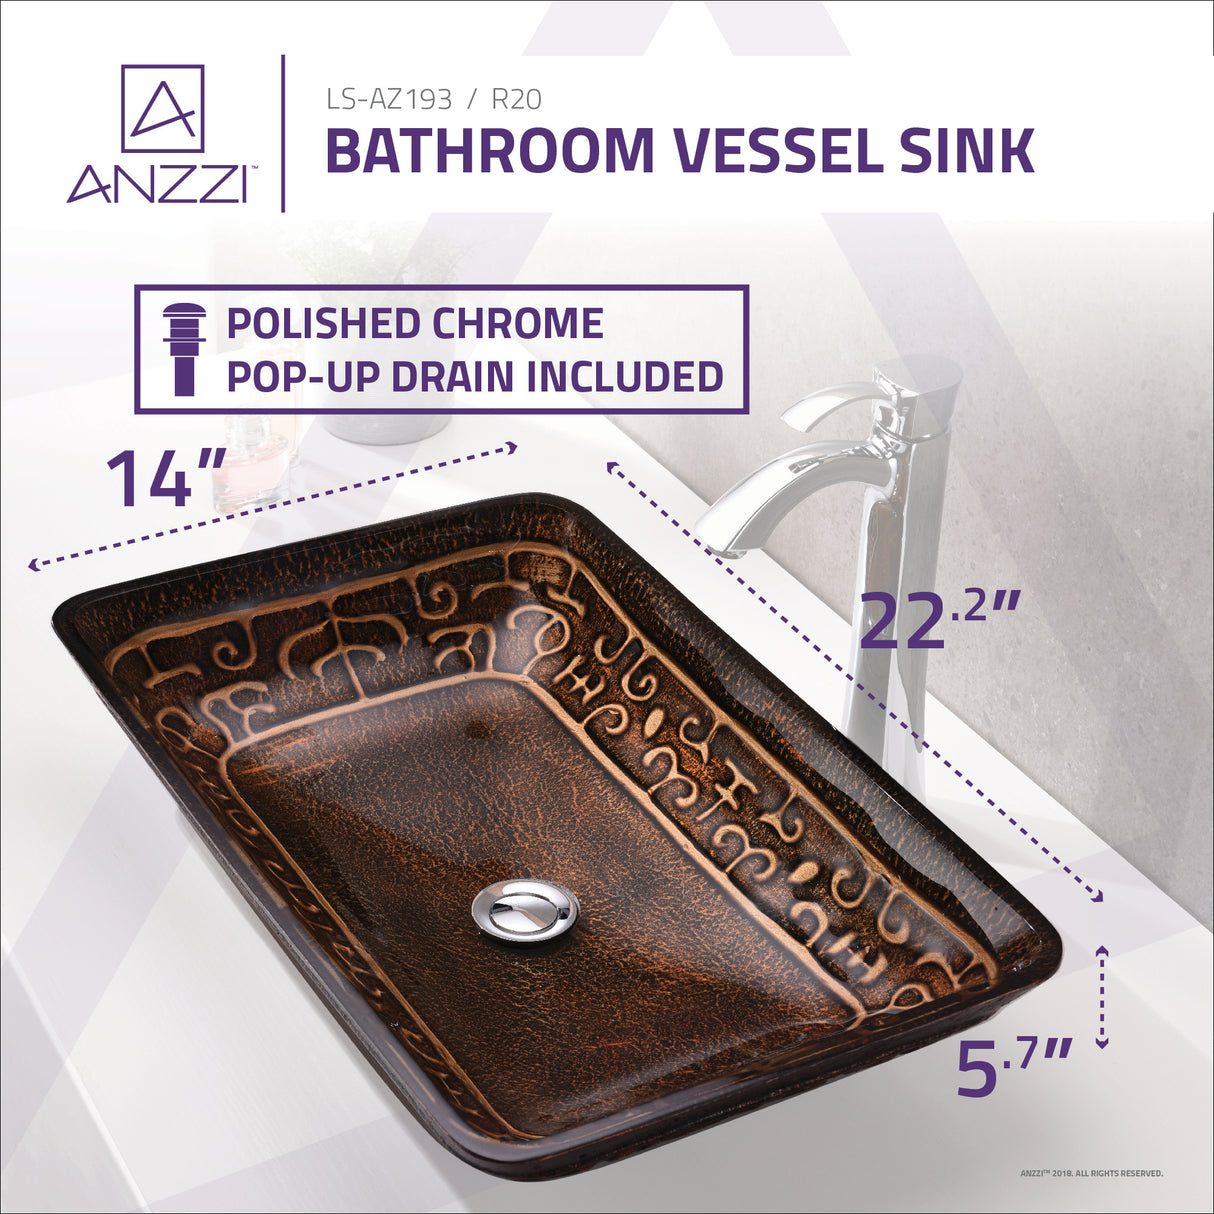 ANZZI LS-AZ193 Alto Series Vessel Sink in Macedonian Bronze